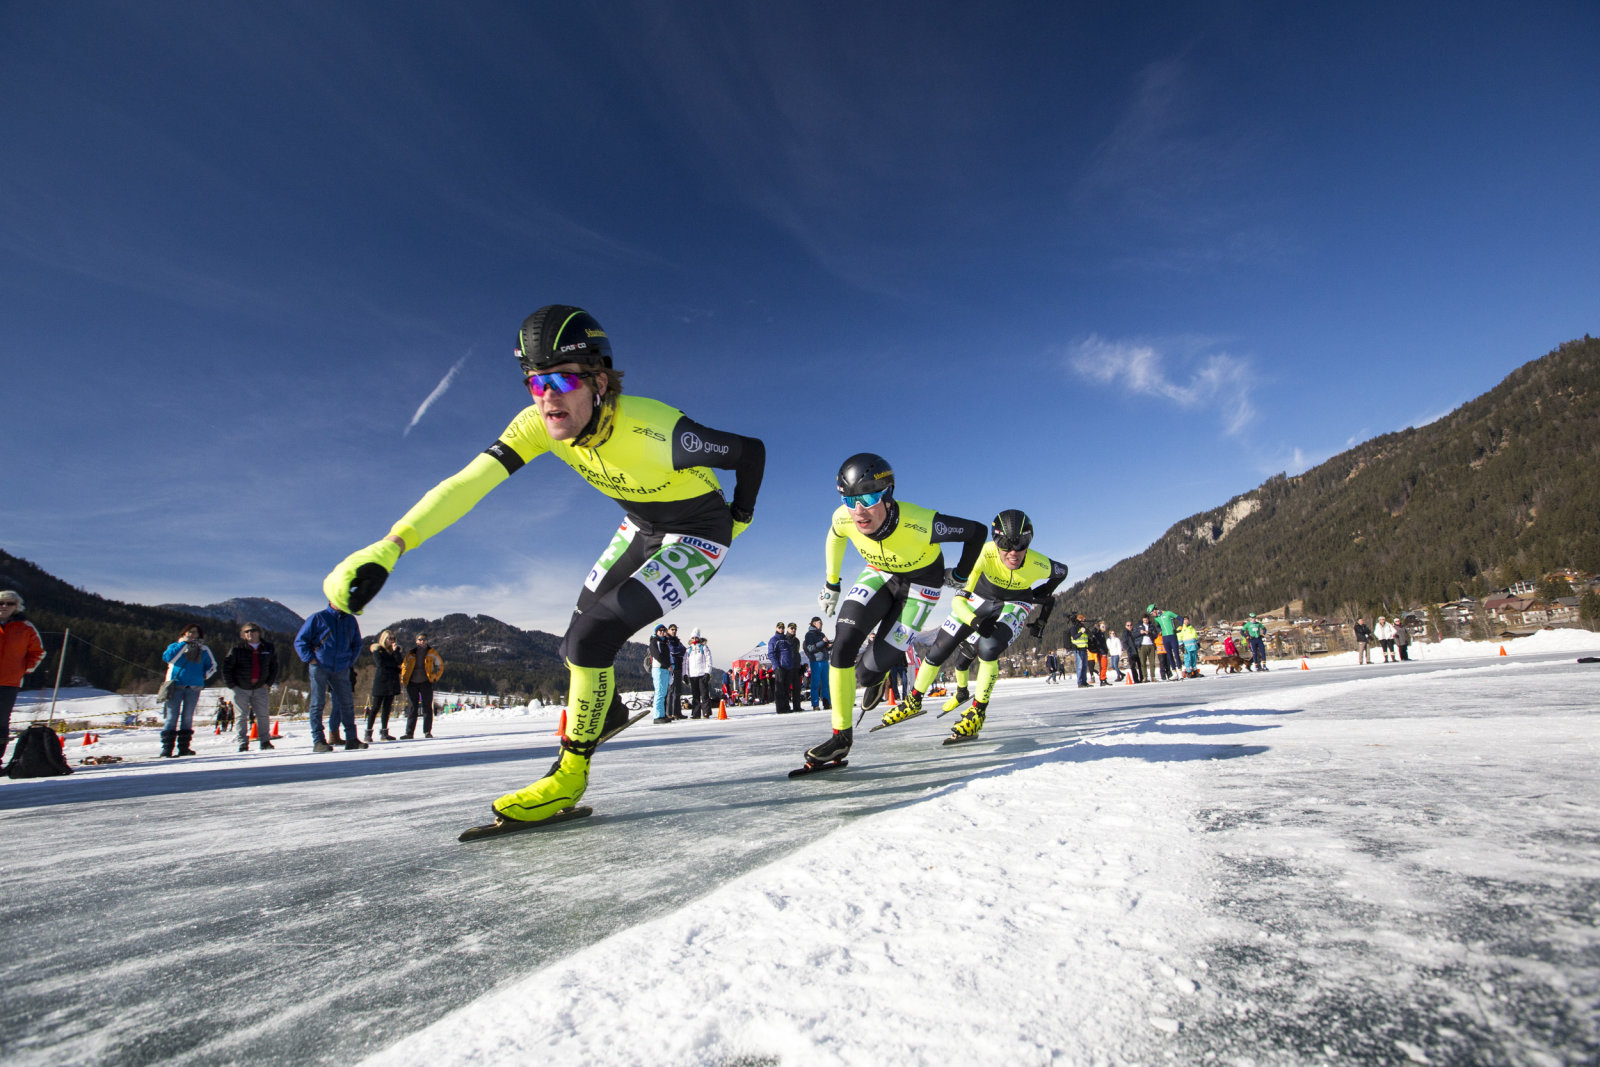 Gyorskorcsolya verseny a Weissensee jegén